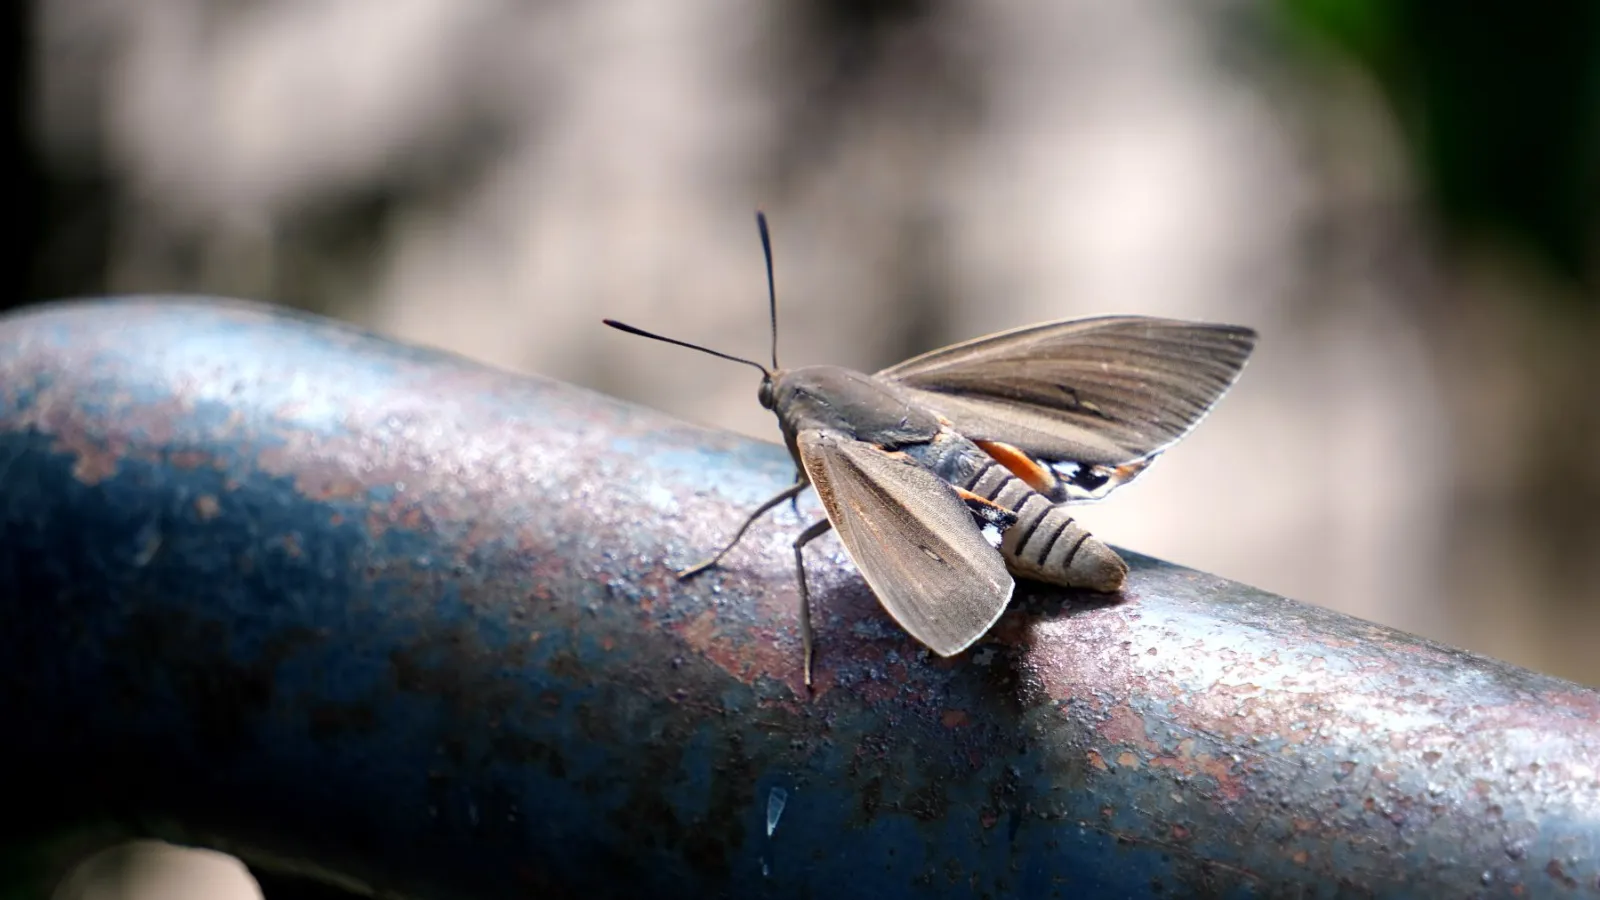 moth extermination services in atlanta